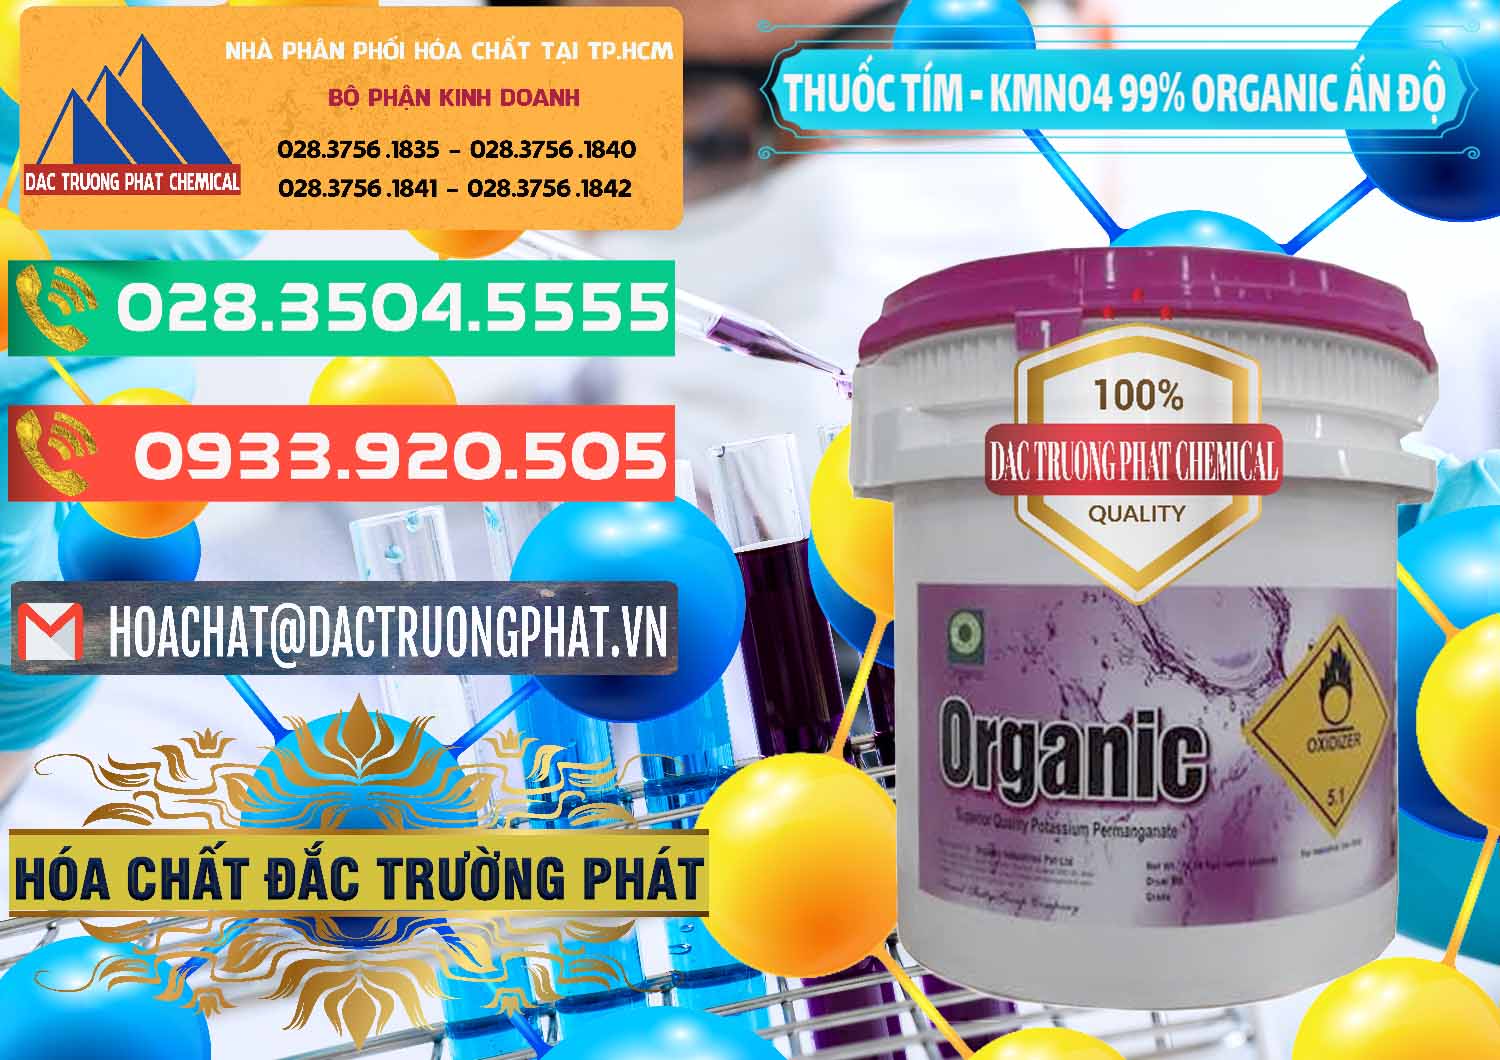 Đơn vị chuyên bán & cung ứng Thuốc Tím - KMNO4 99% Organic Ấn Độ India - 0216 - Chuyên cung cấp _ phân phối hóa chất tại TP.HCM - congtyhoachat.com.vn